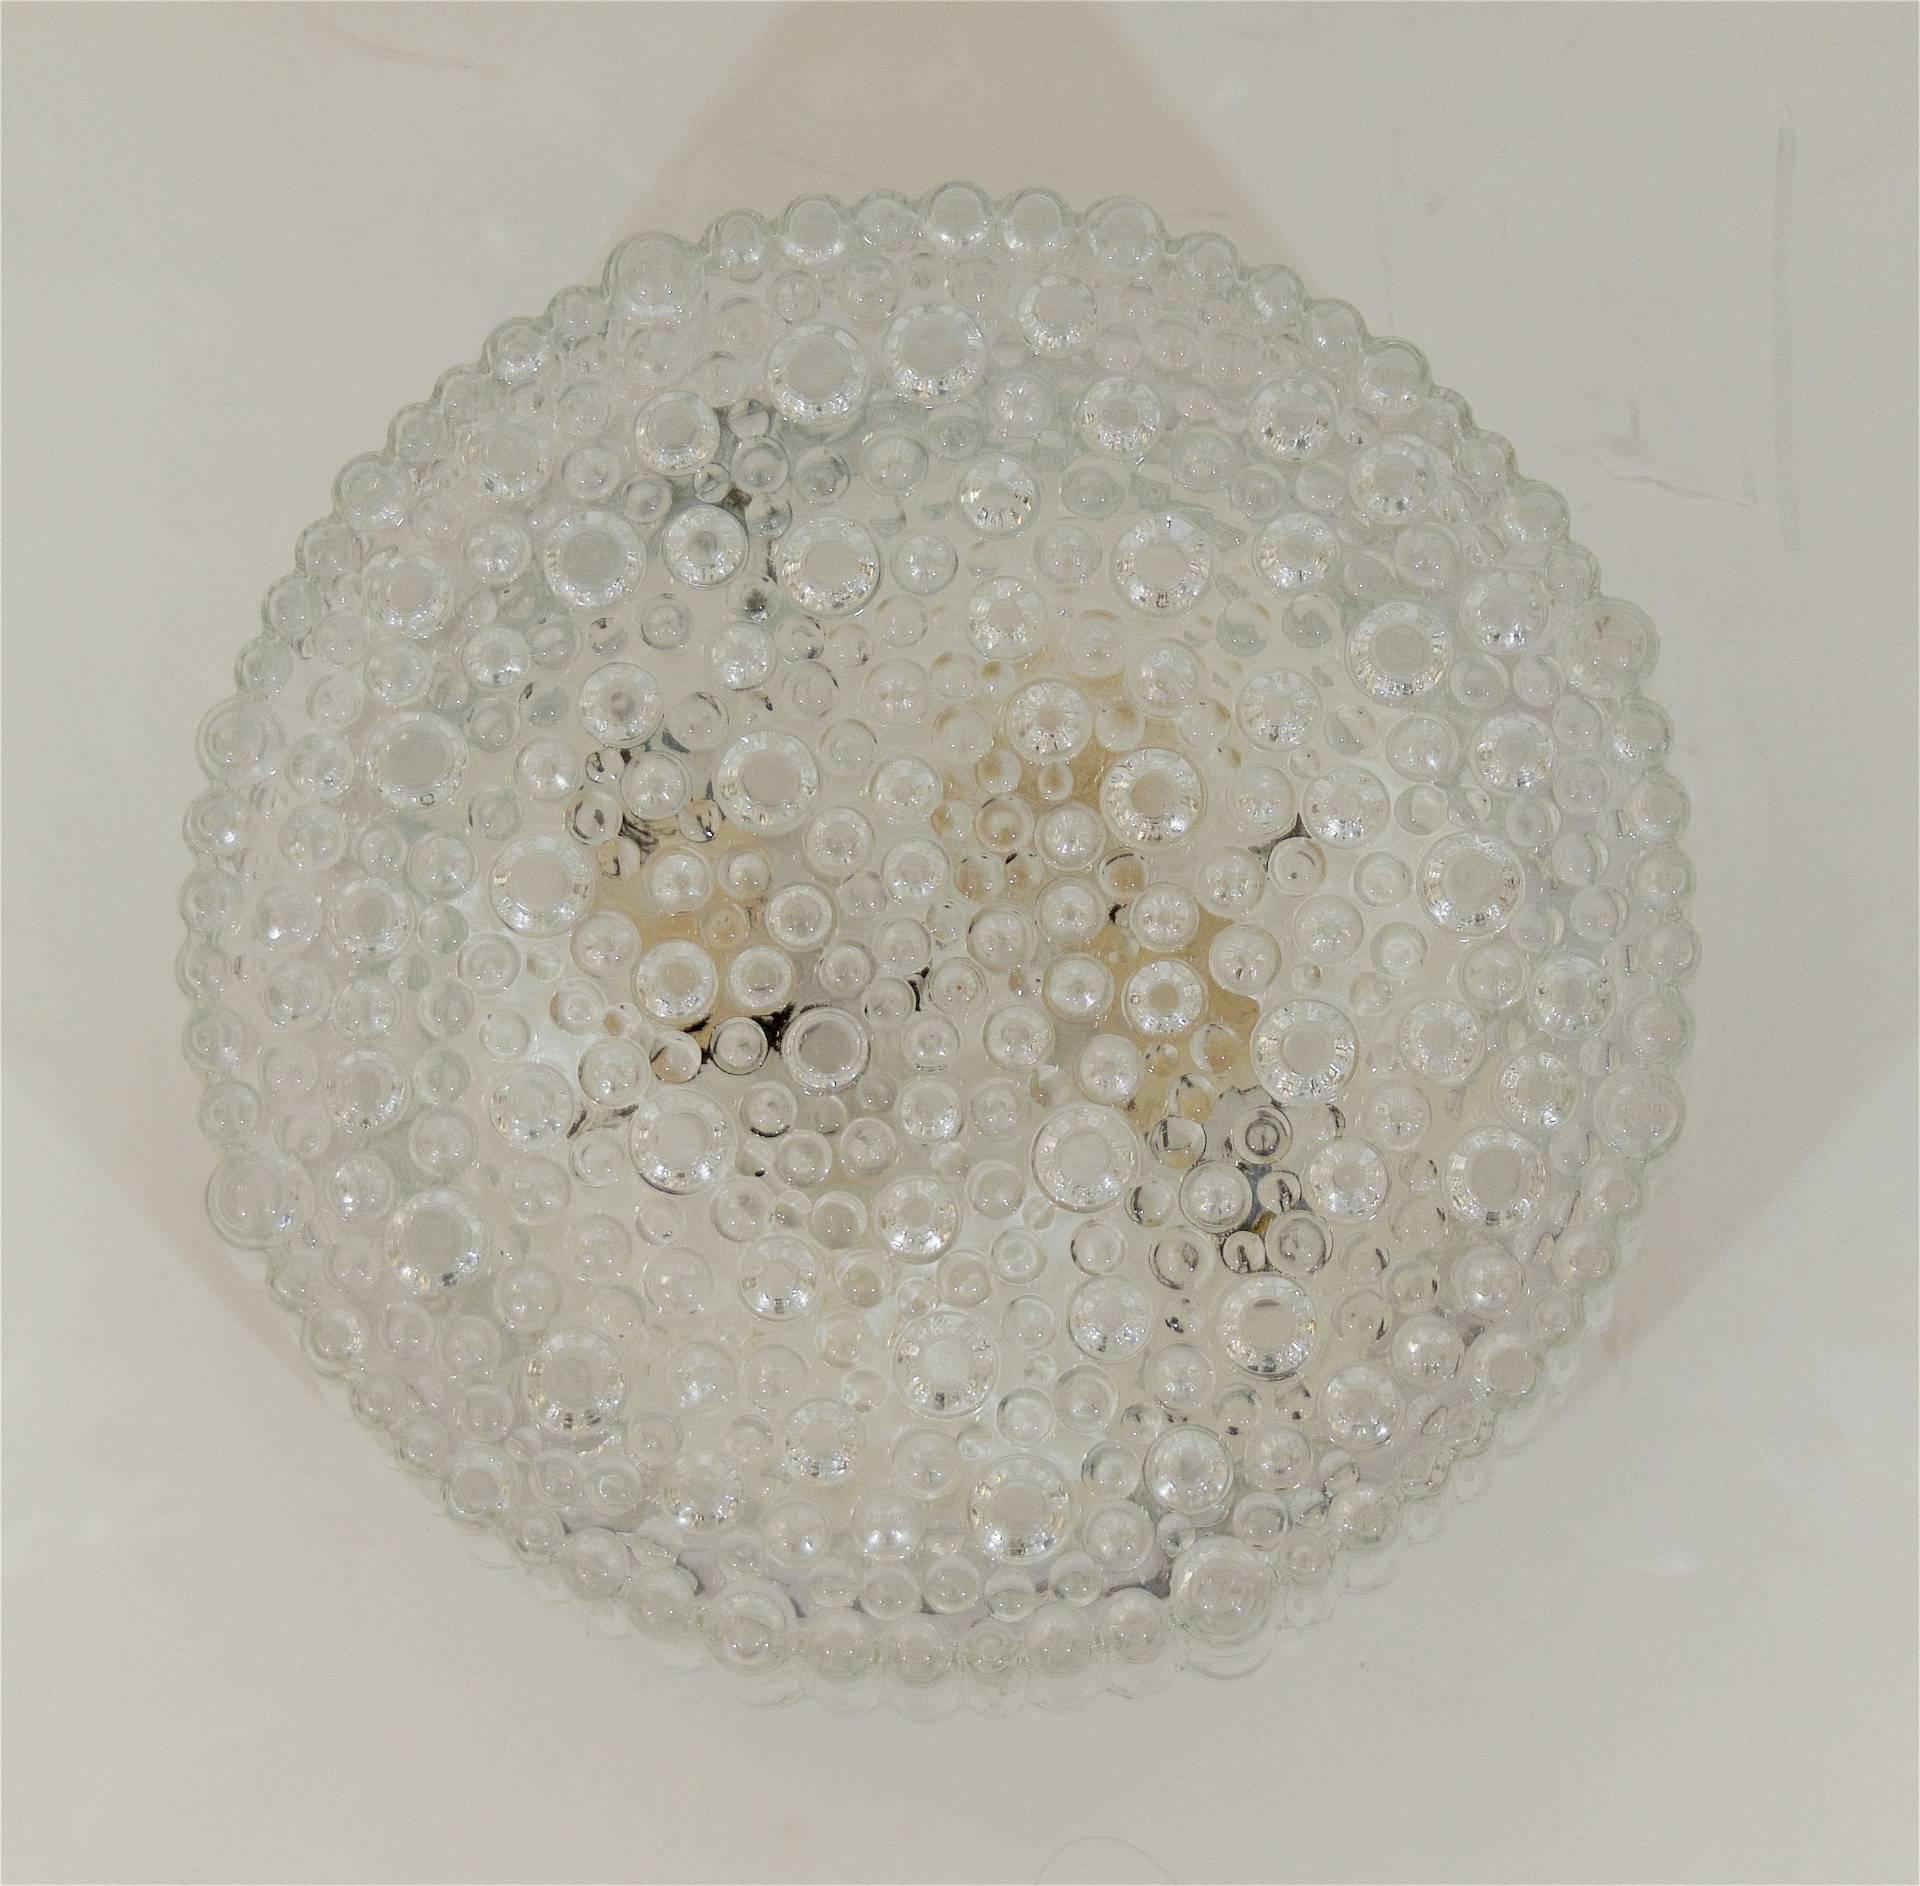 Enameled Bubble Textured Hustadt Leuchten Flush Mount For Sale